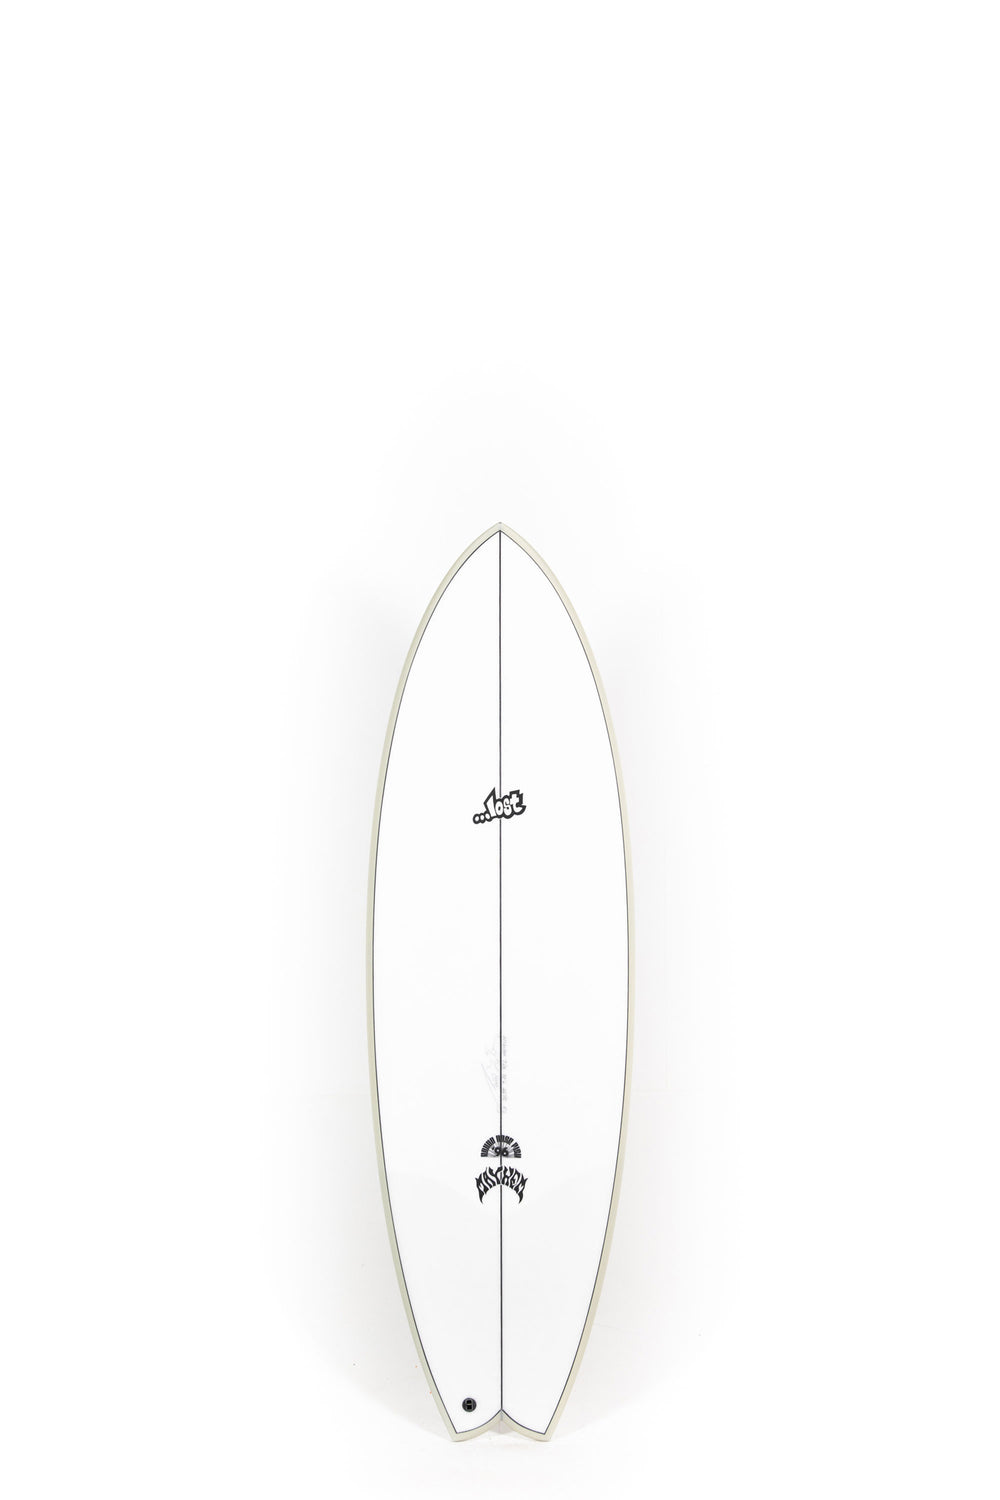 Pukas Surf Shop - Lost Surfboard - RNF '96 by Matt Biolos - 5'8